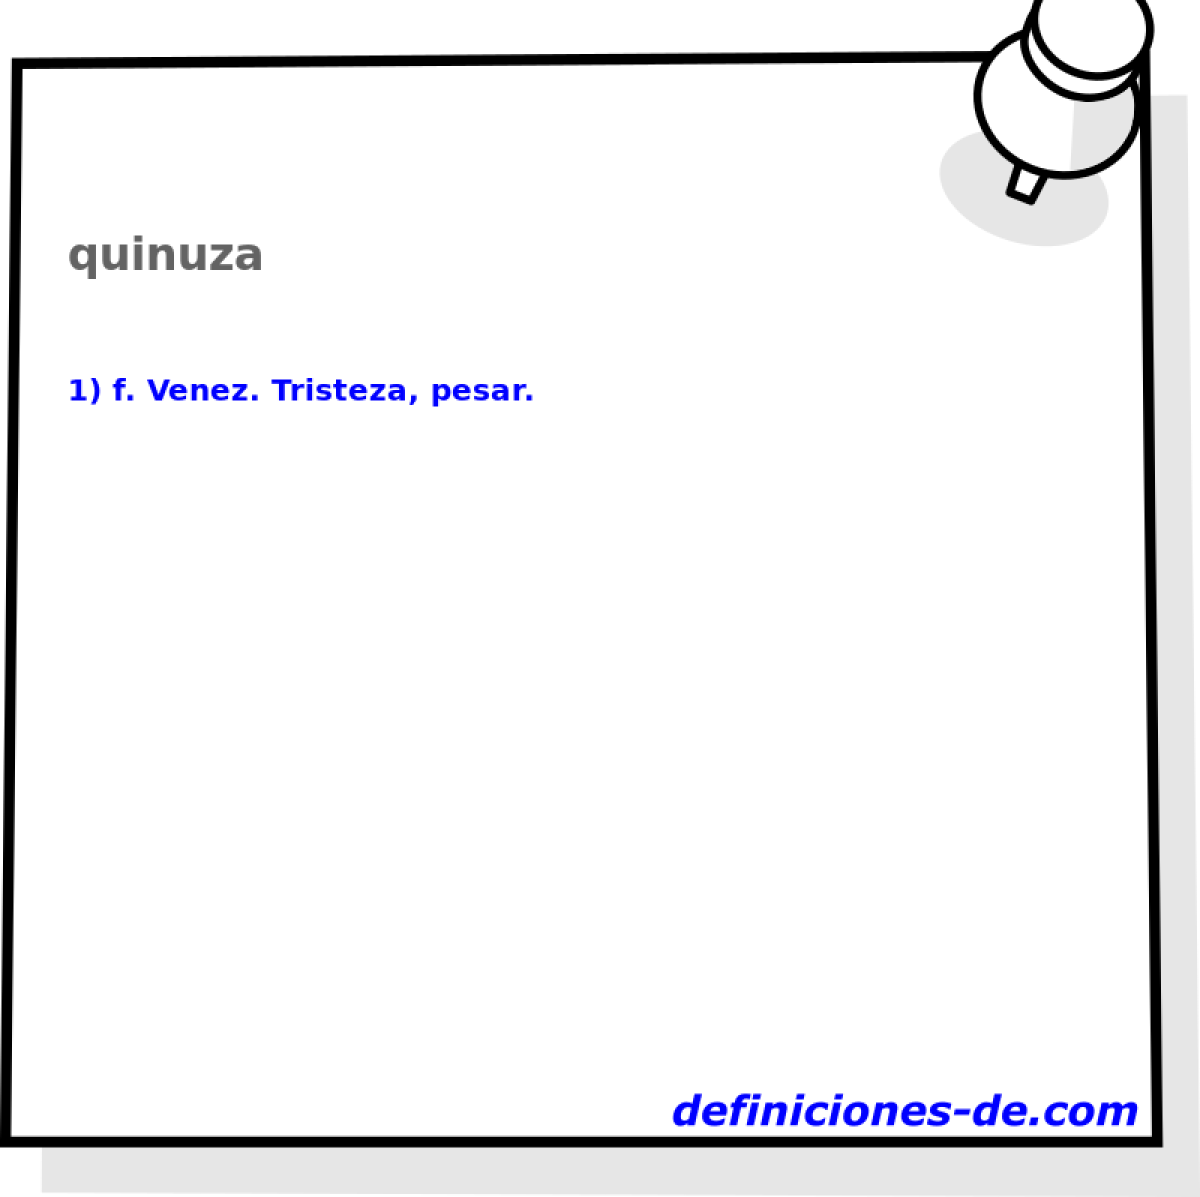 quinuza 